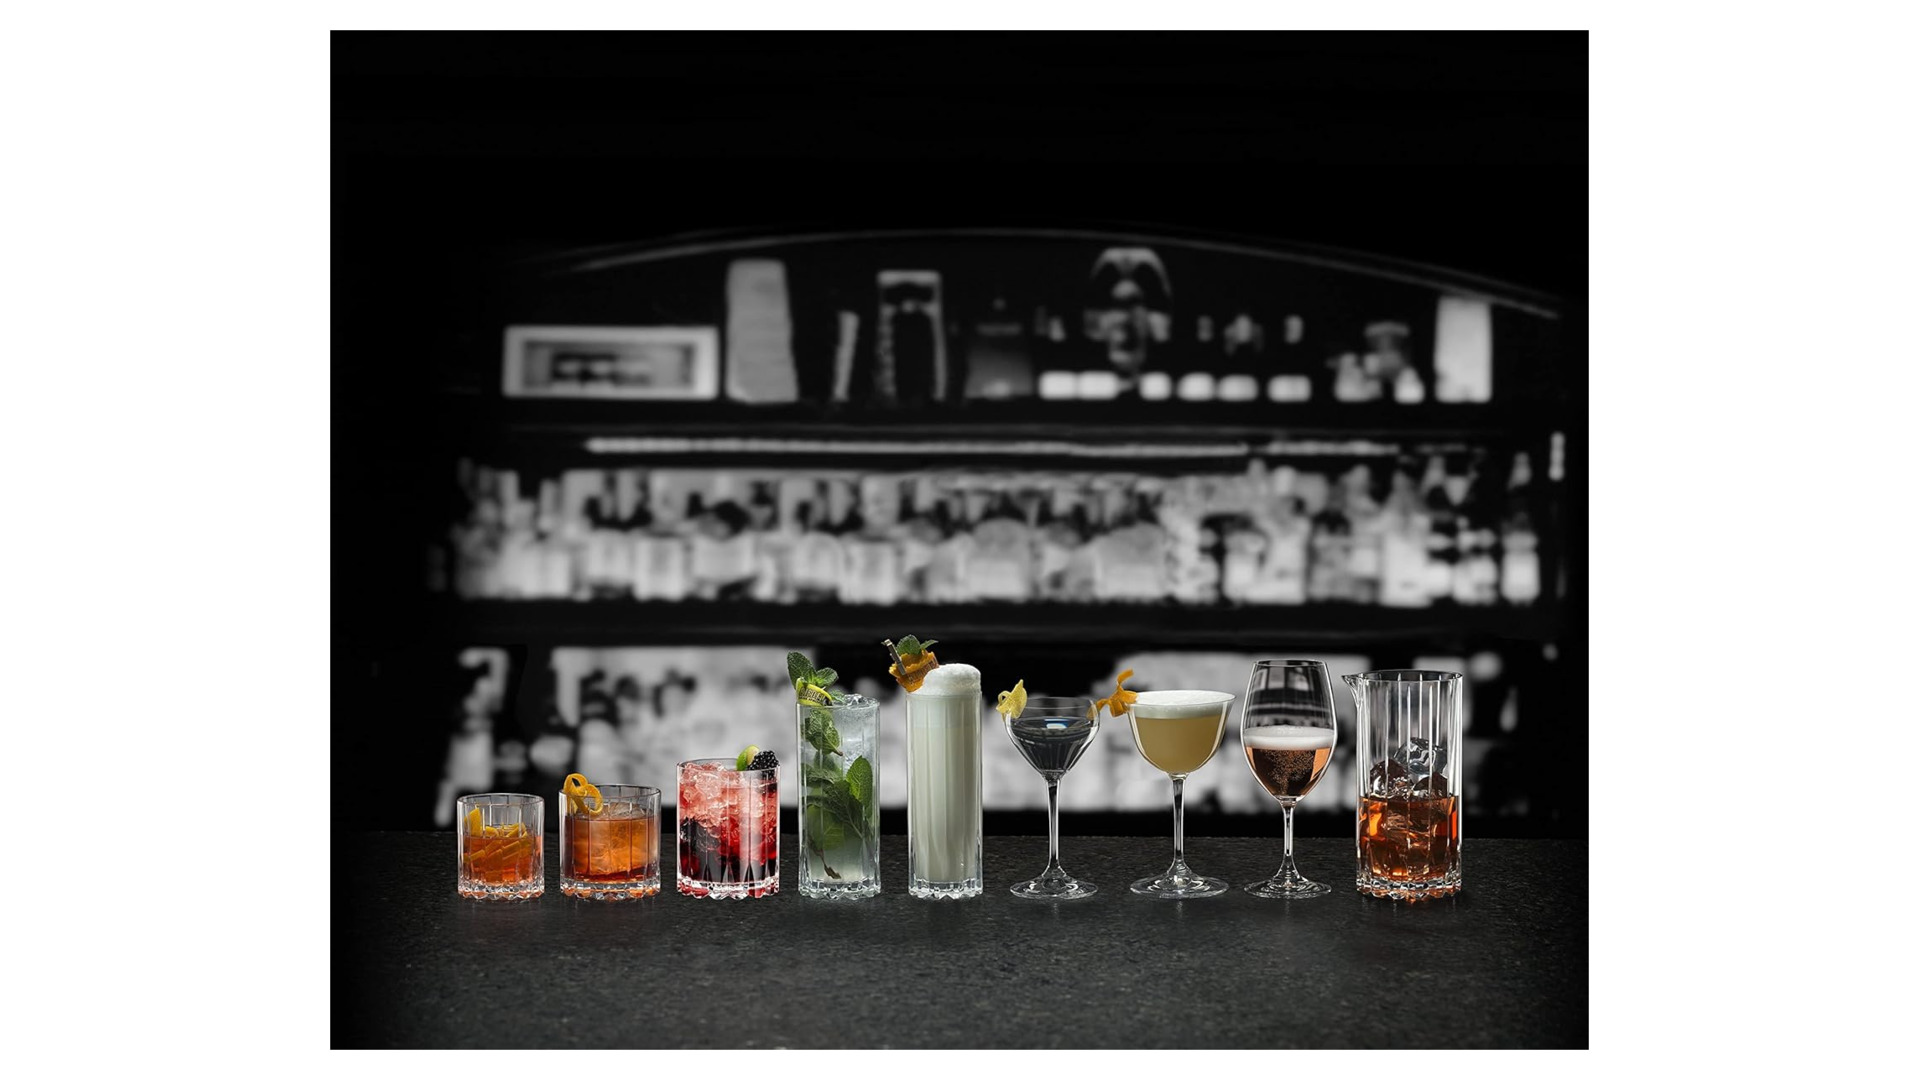 Набор бокалов для коктейля Riedel Bar Nick & Nora 140 мл, h15 см, 2шт, стекло хрустальное